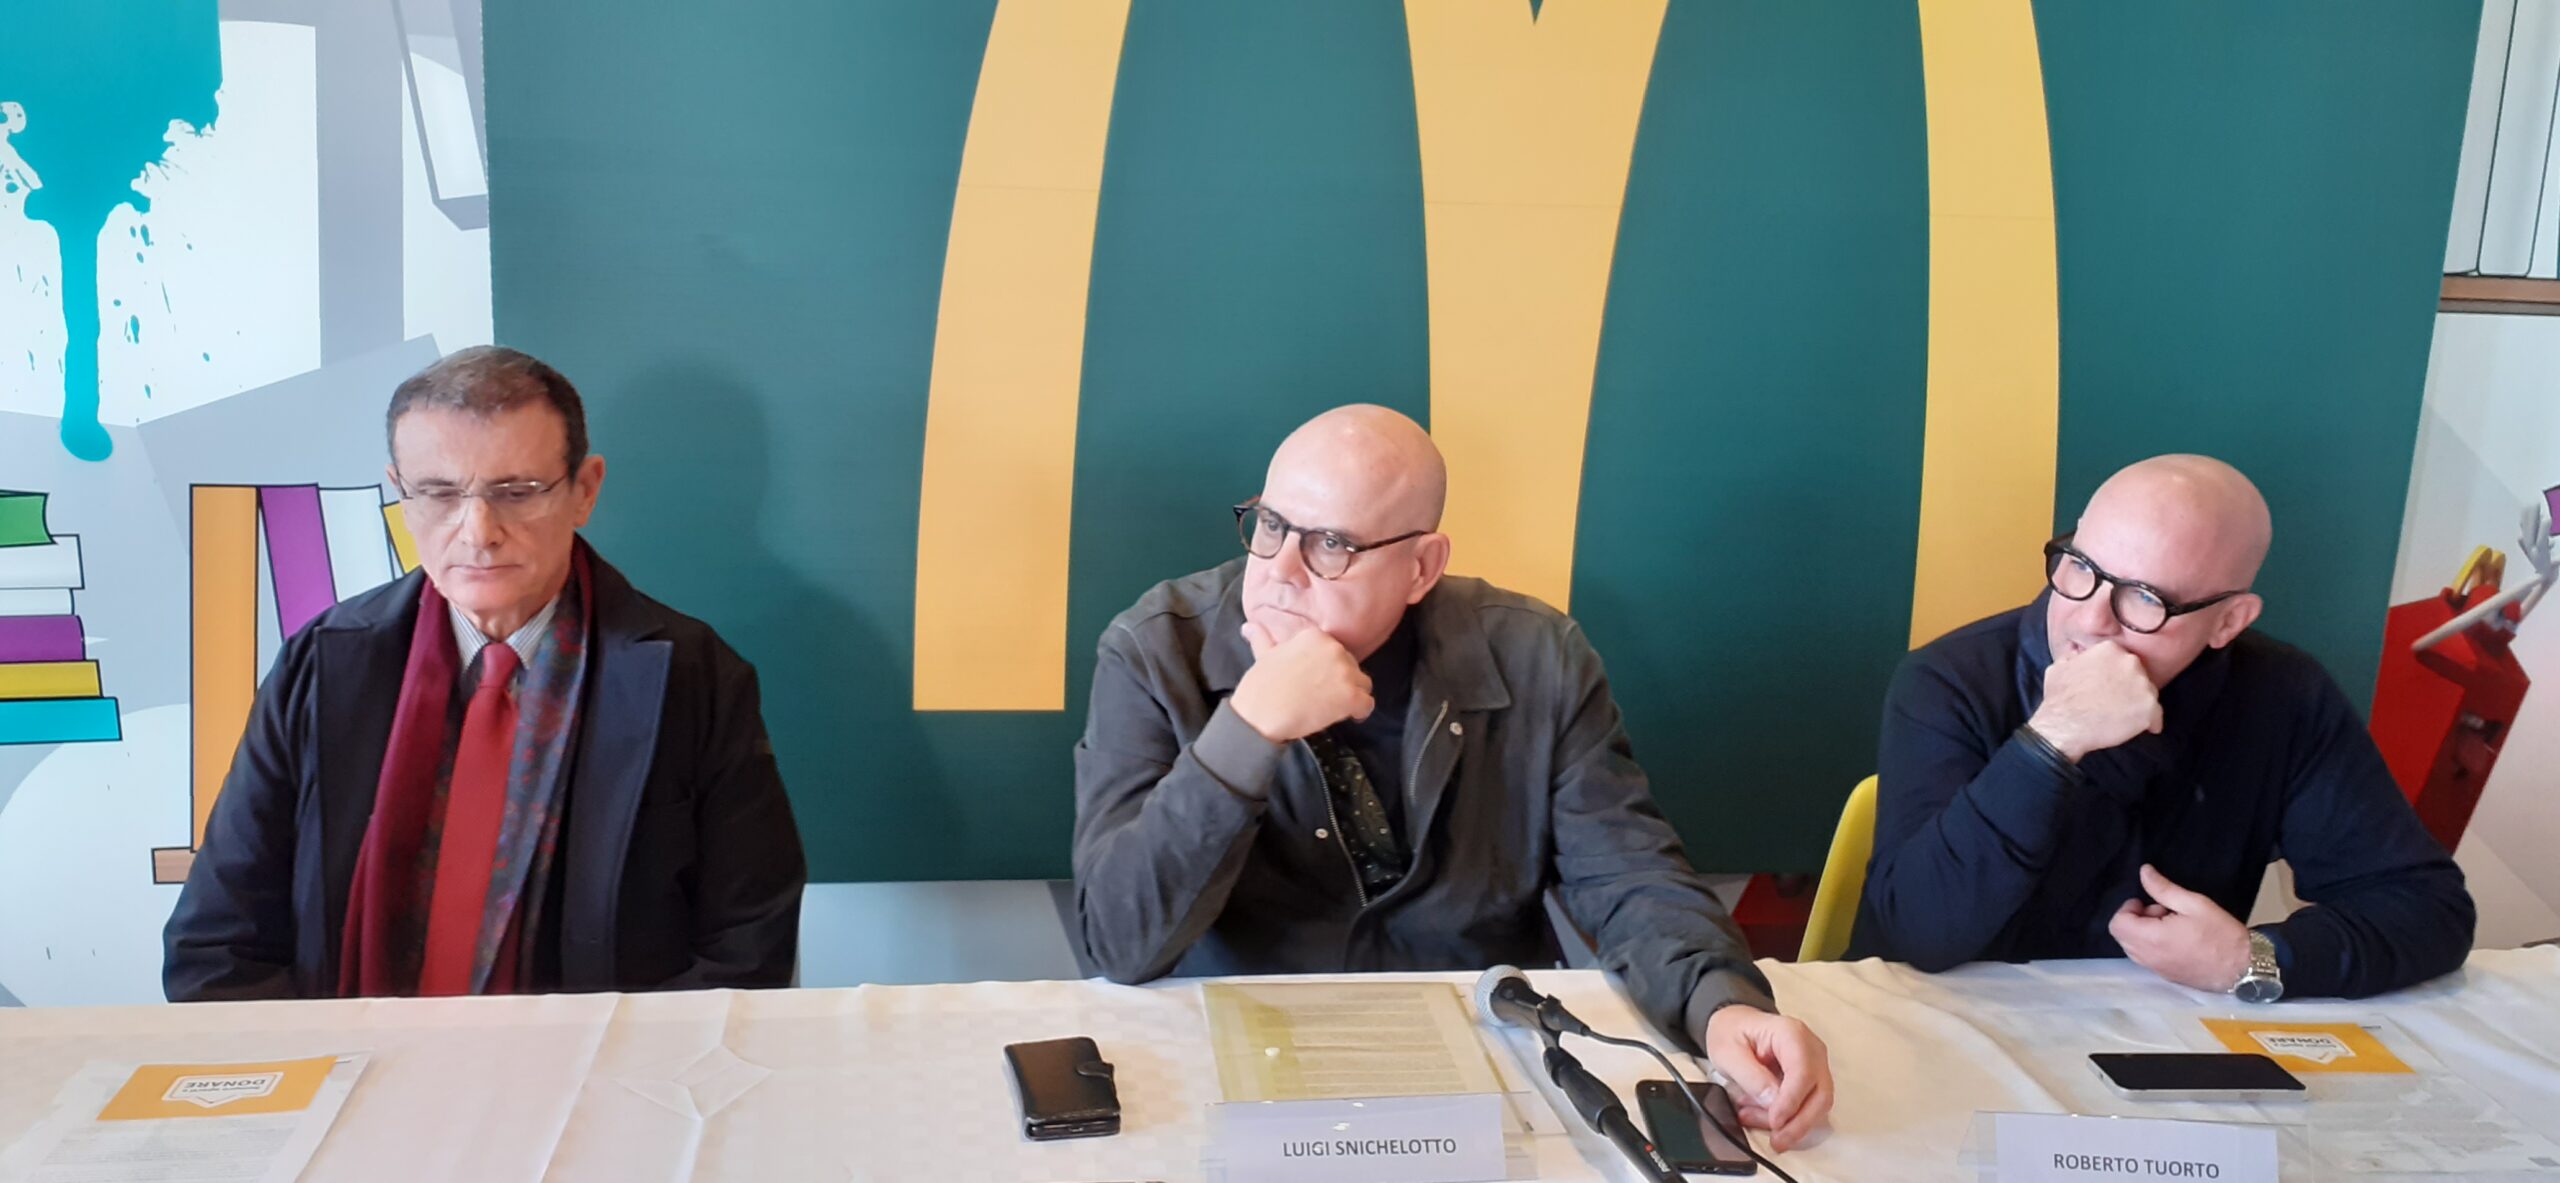 Salerno: presentata iniziativa di solidarietà McDonald’s – Fondazione Ronald McDonald, Banco Alimentare